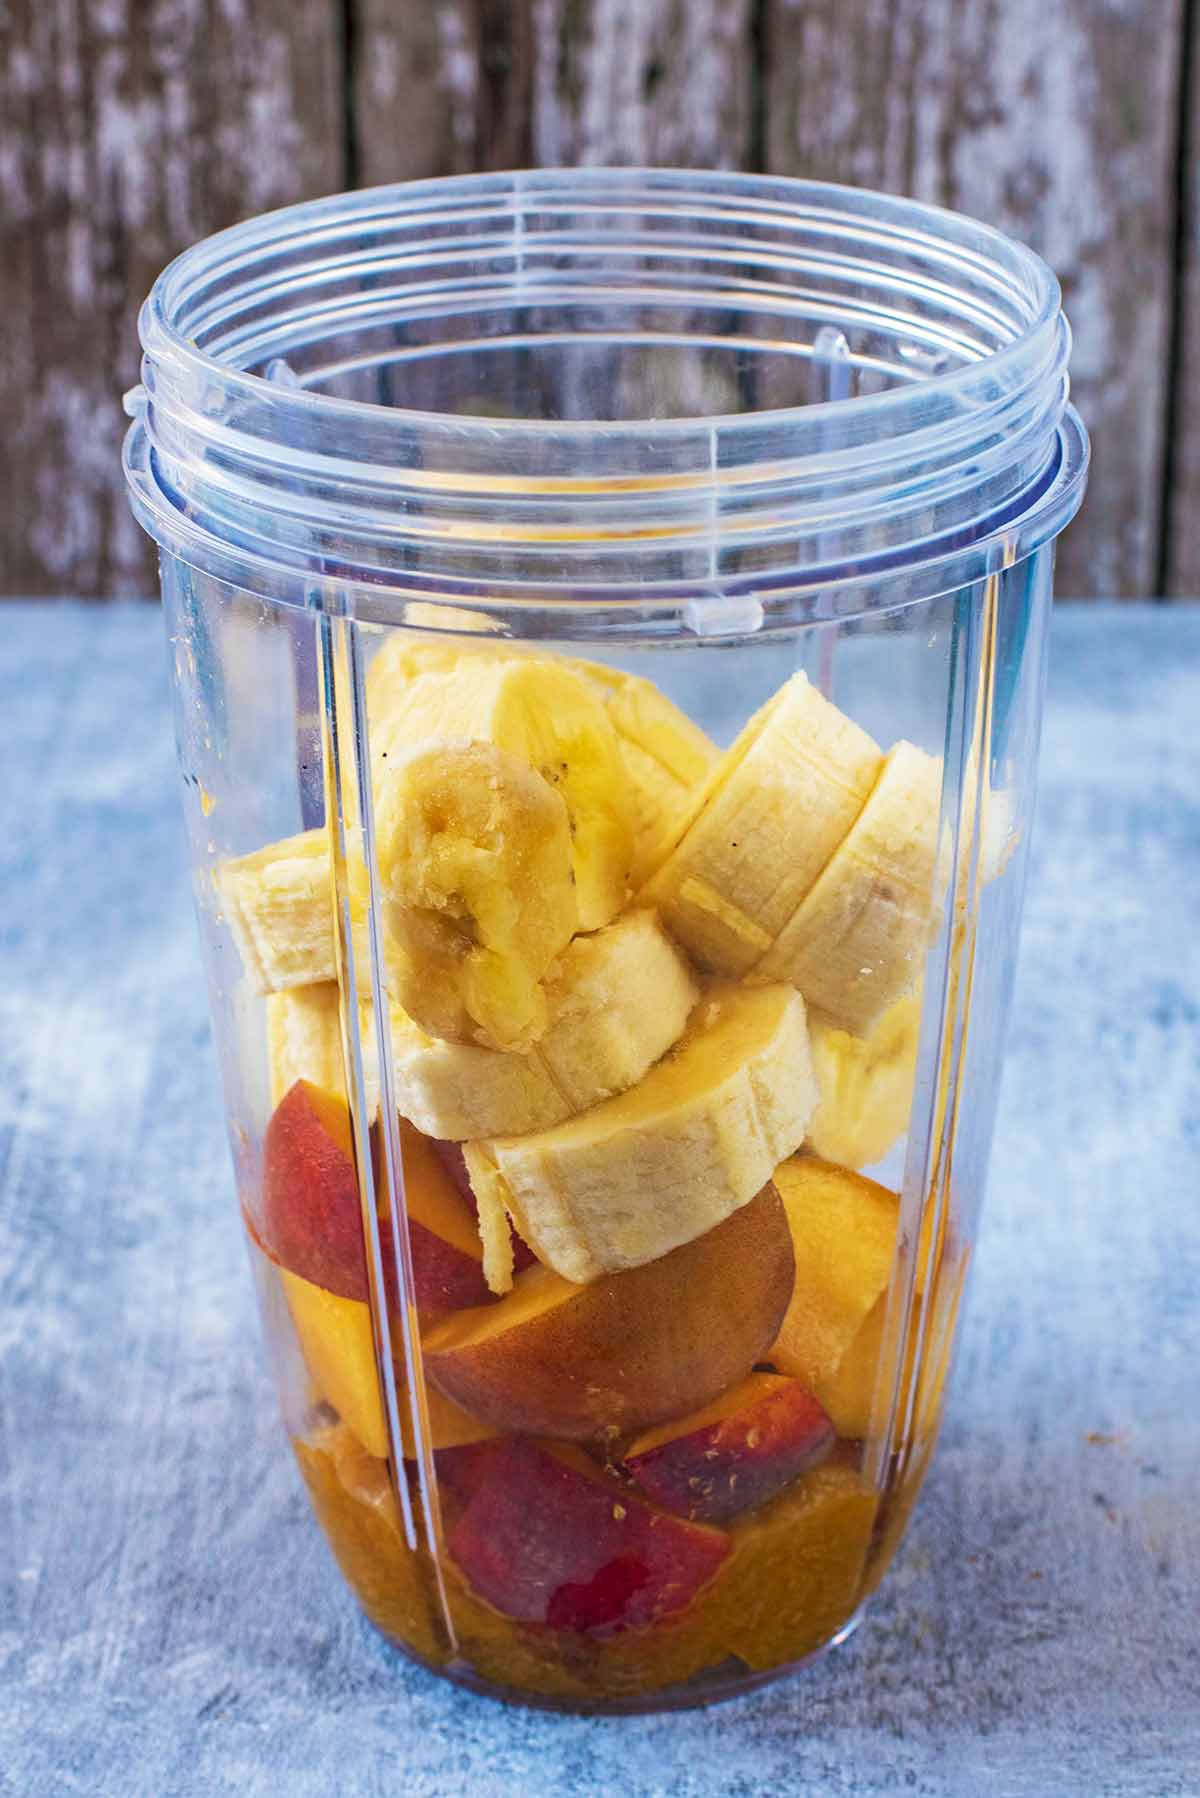 Chopped banan and chopped peach in a blender jug.